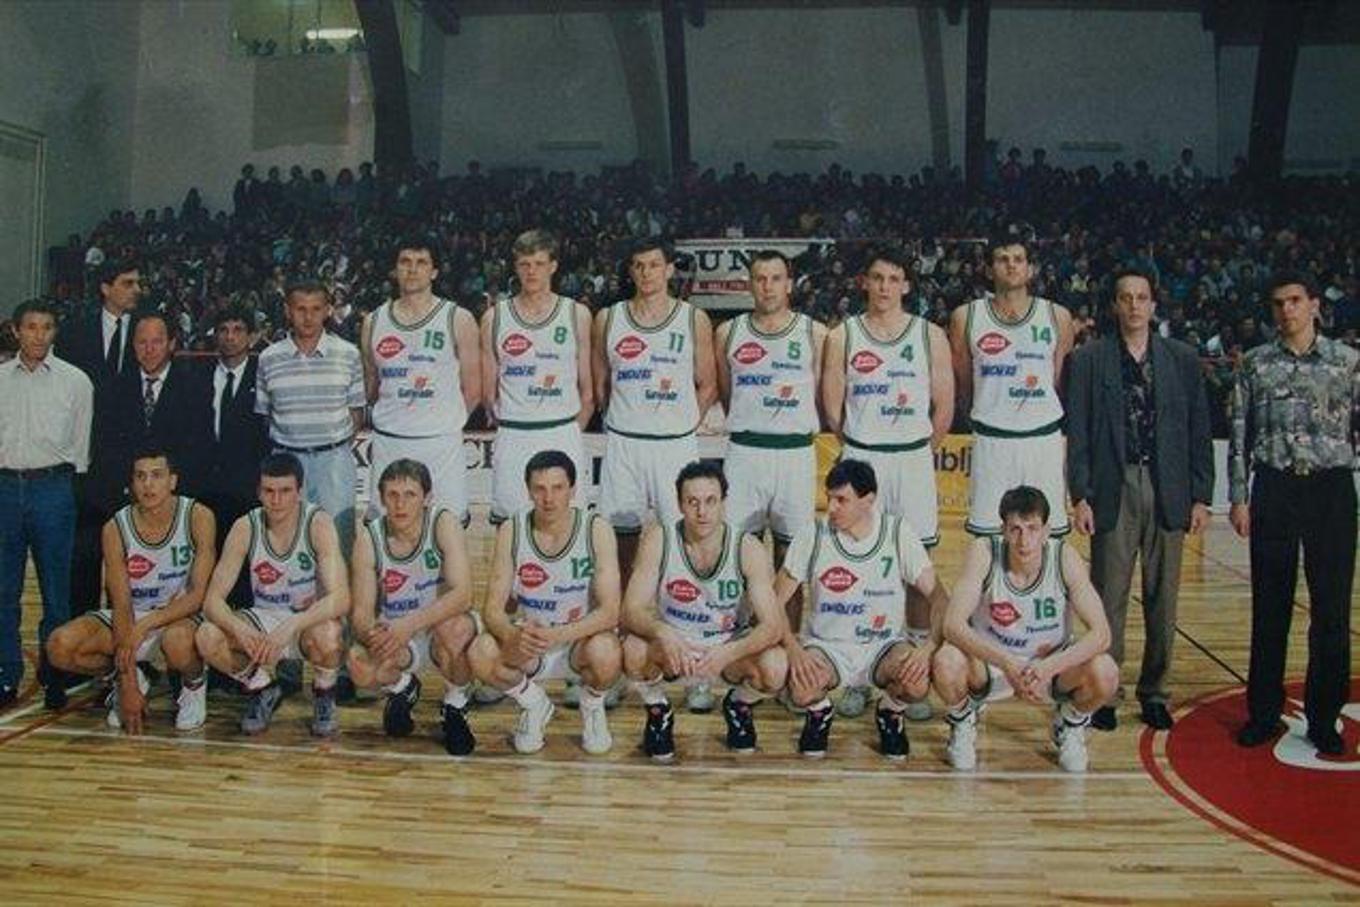 Košarkarske reprezentance od osamosvojitve Slovenije (seznam)